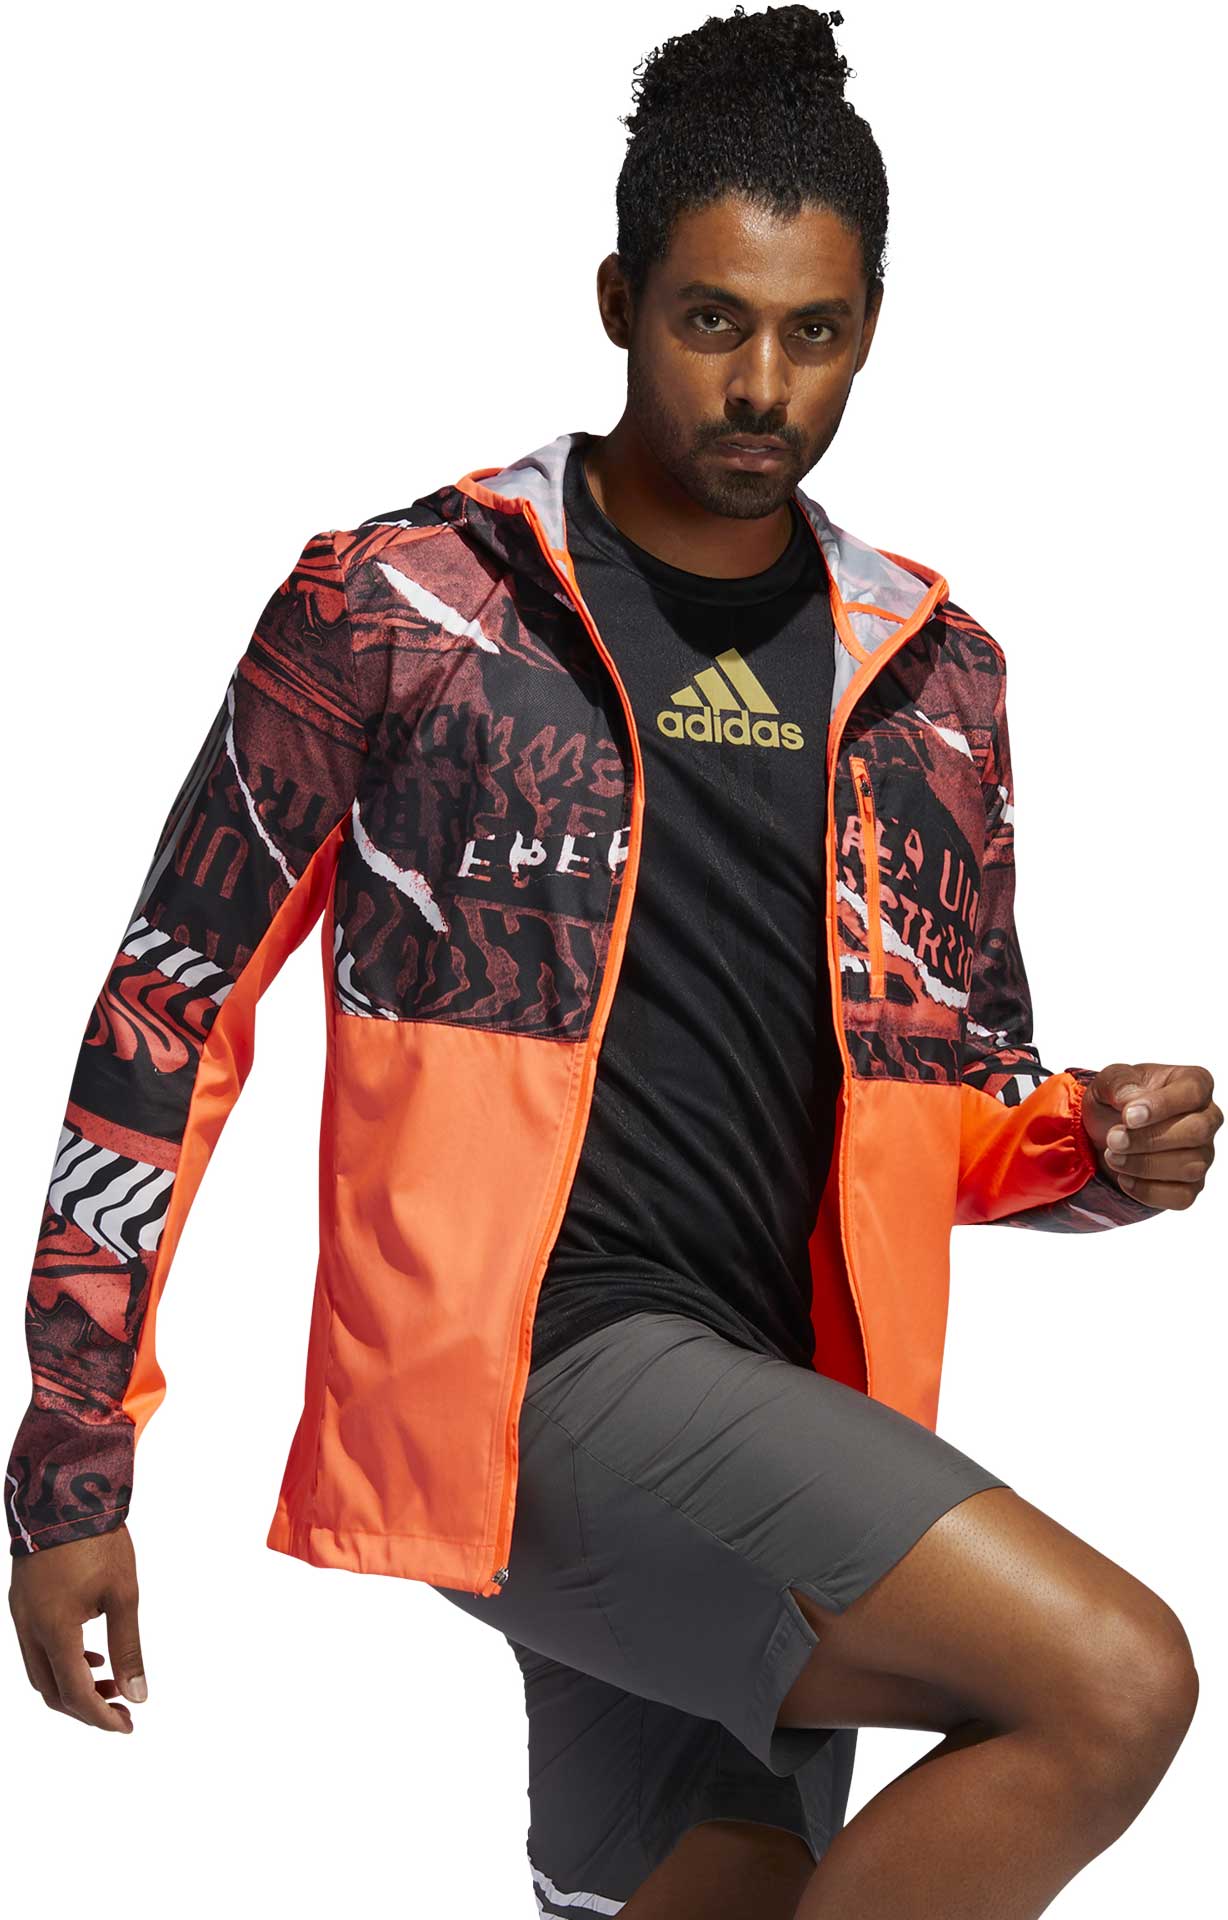 Men's running jacket